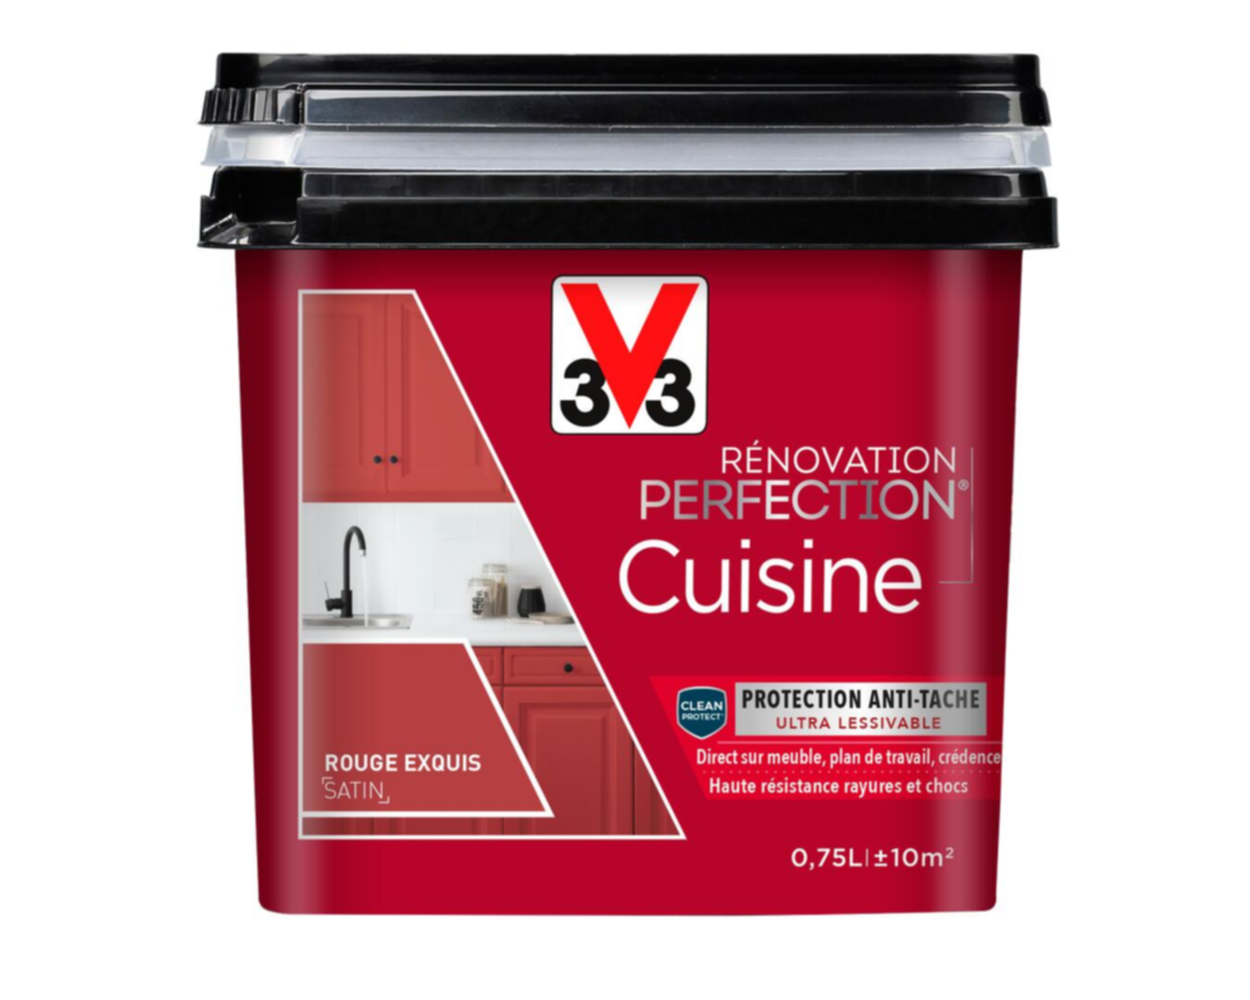 Peinture rénovation cuisine Perfection rouge exquis satin 0,75l - V33